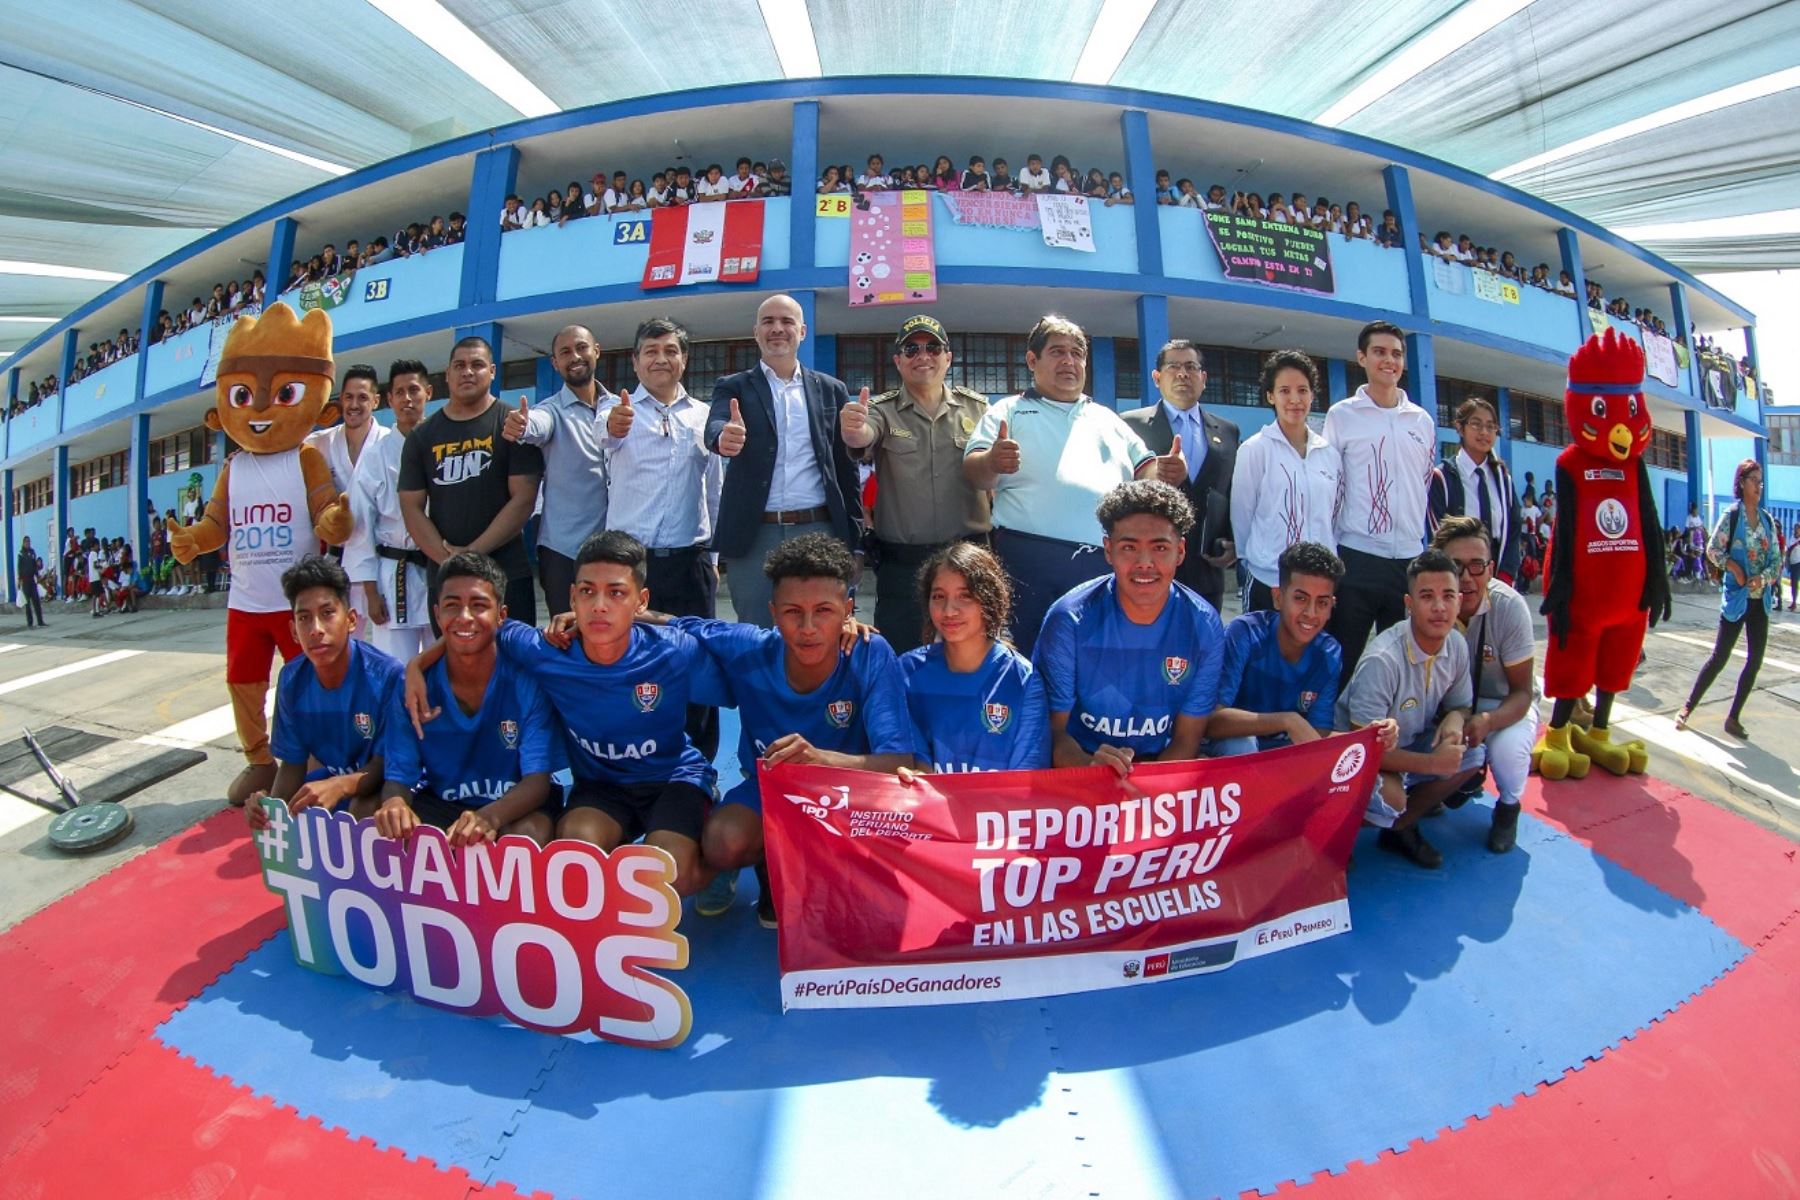 Deportistas de Top Perú acompañados del Sebastián Suito López, presidente del IPD, presentan programa en el Institución educativa José Olaya en el Callao. Foto: ANDINA/Difusión